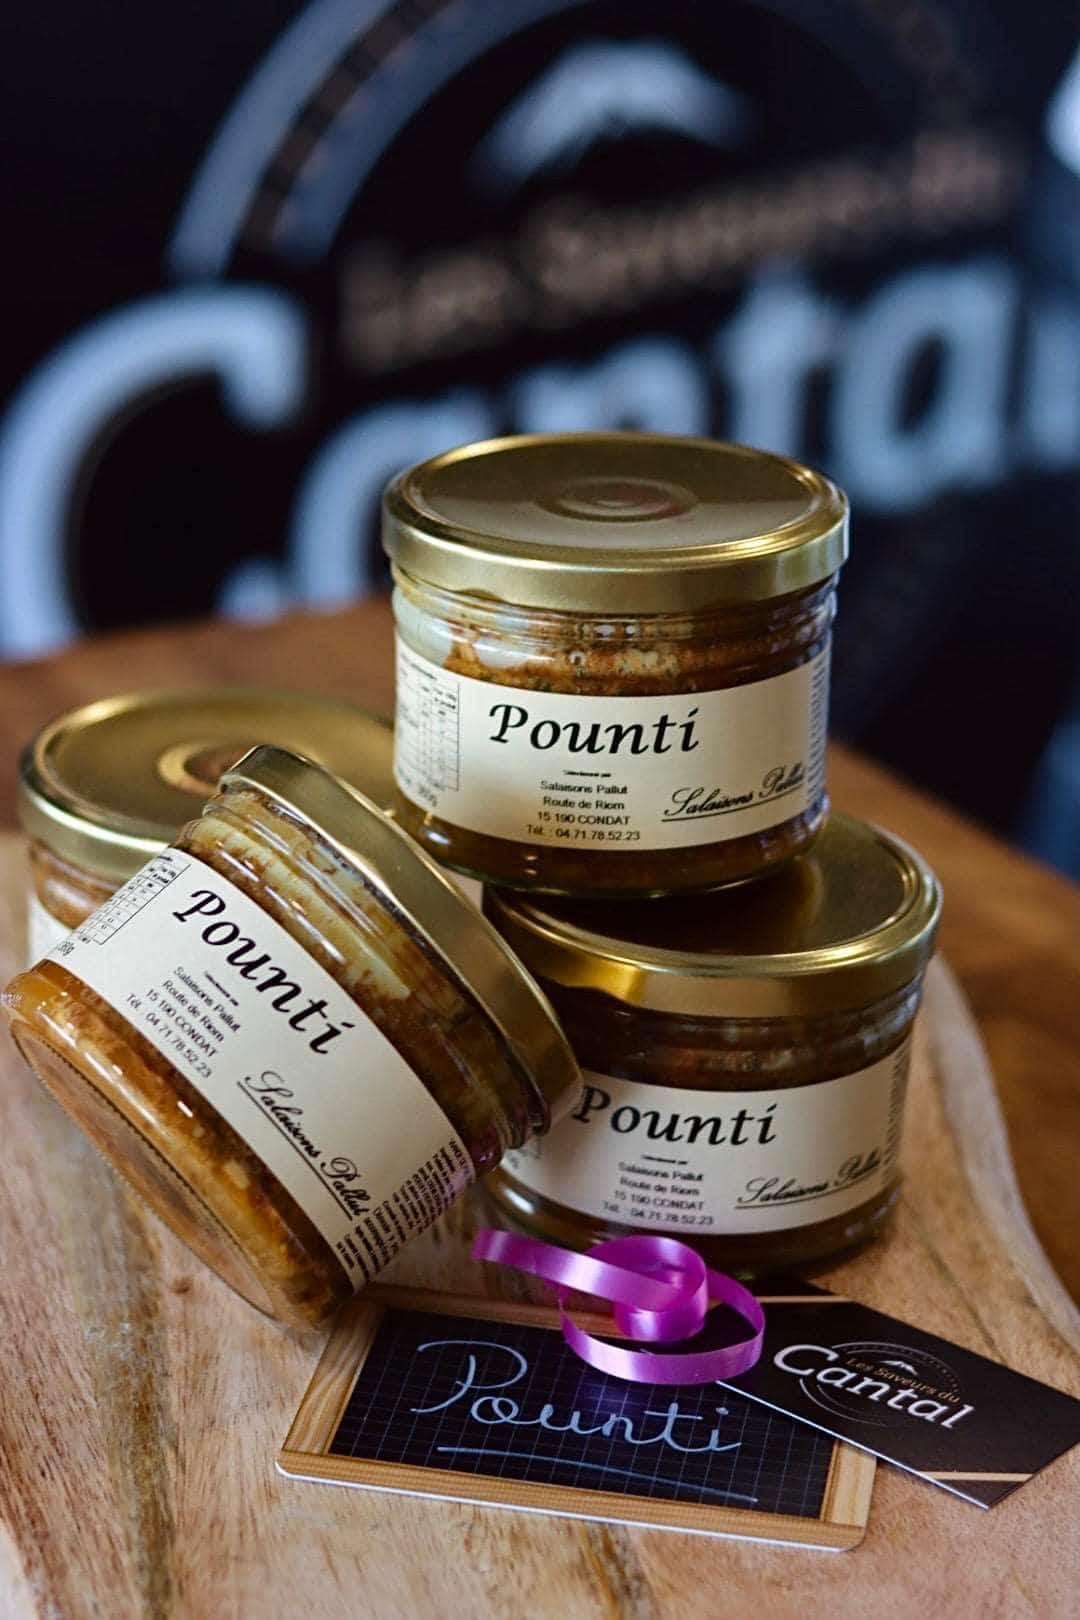 
                  
                    Pounti est un plat traditionnel de la région Auvergne en France. Il s'agit d'une sorte de terrine à base de viande de porc, de pruneaux, de légumes verts et d'œufs, le tout lié avec de la farine de seigle. Cette spécialité culinaire est connue pour son goût délicieusement salé-sucré, ainsi que pour sa texture moelleuse et fondante en bouche. Le pounti est souvent servi en entrée, en plat principal ou en apéritif pour accompagner un bon verre de vin rouge. 
                  
                